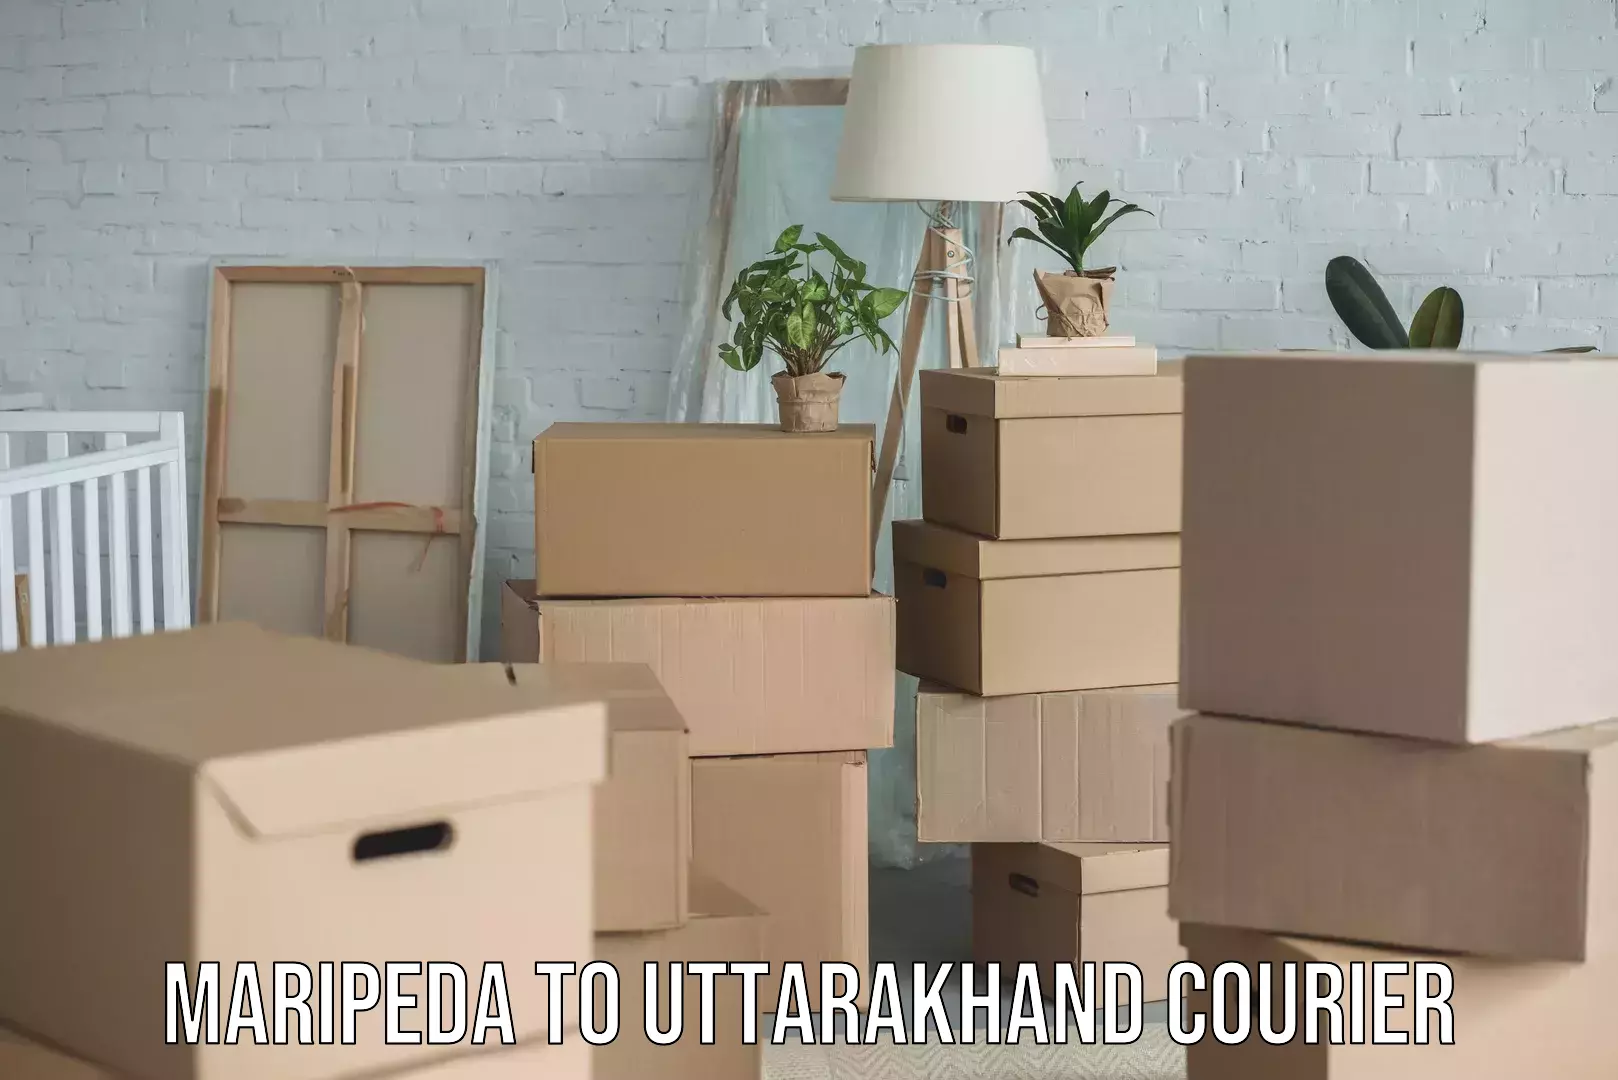 Full-service household moving Maripeda to Uttarakhand